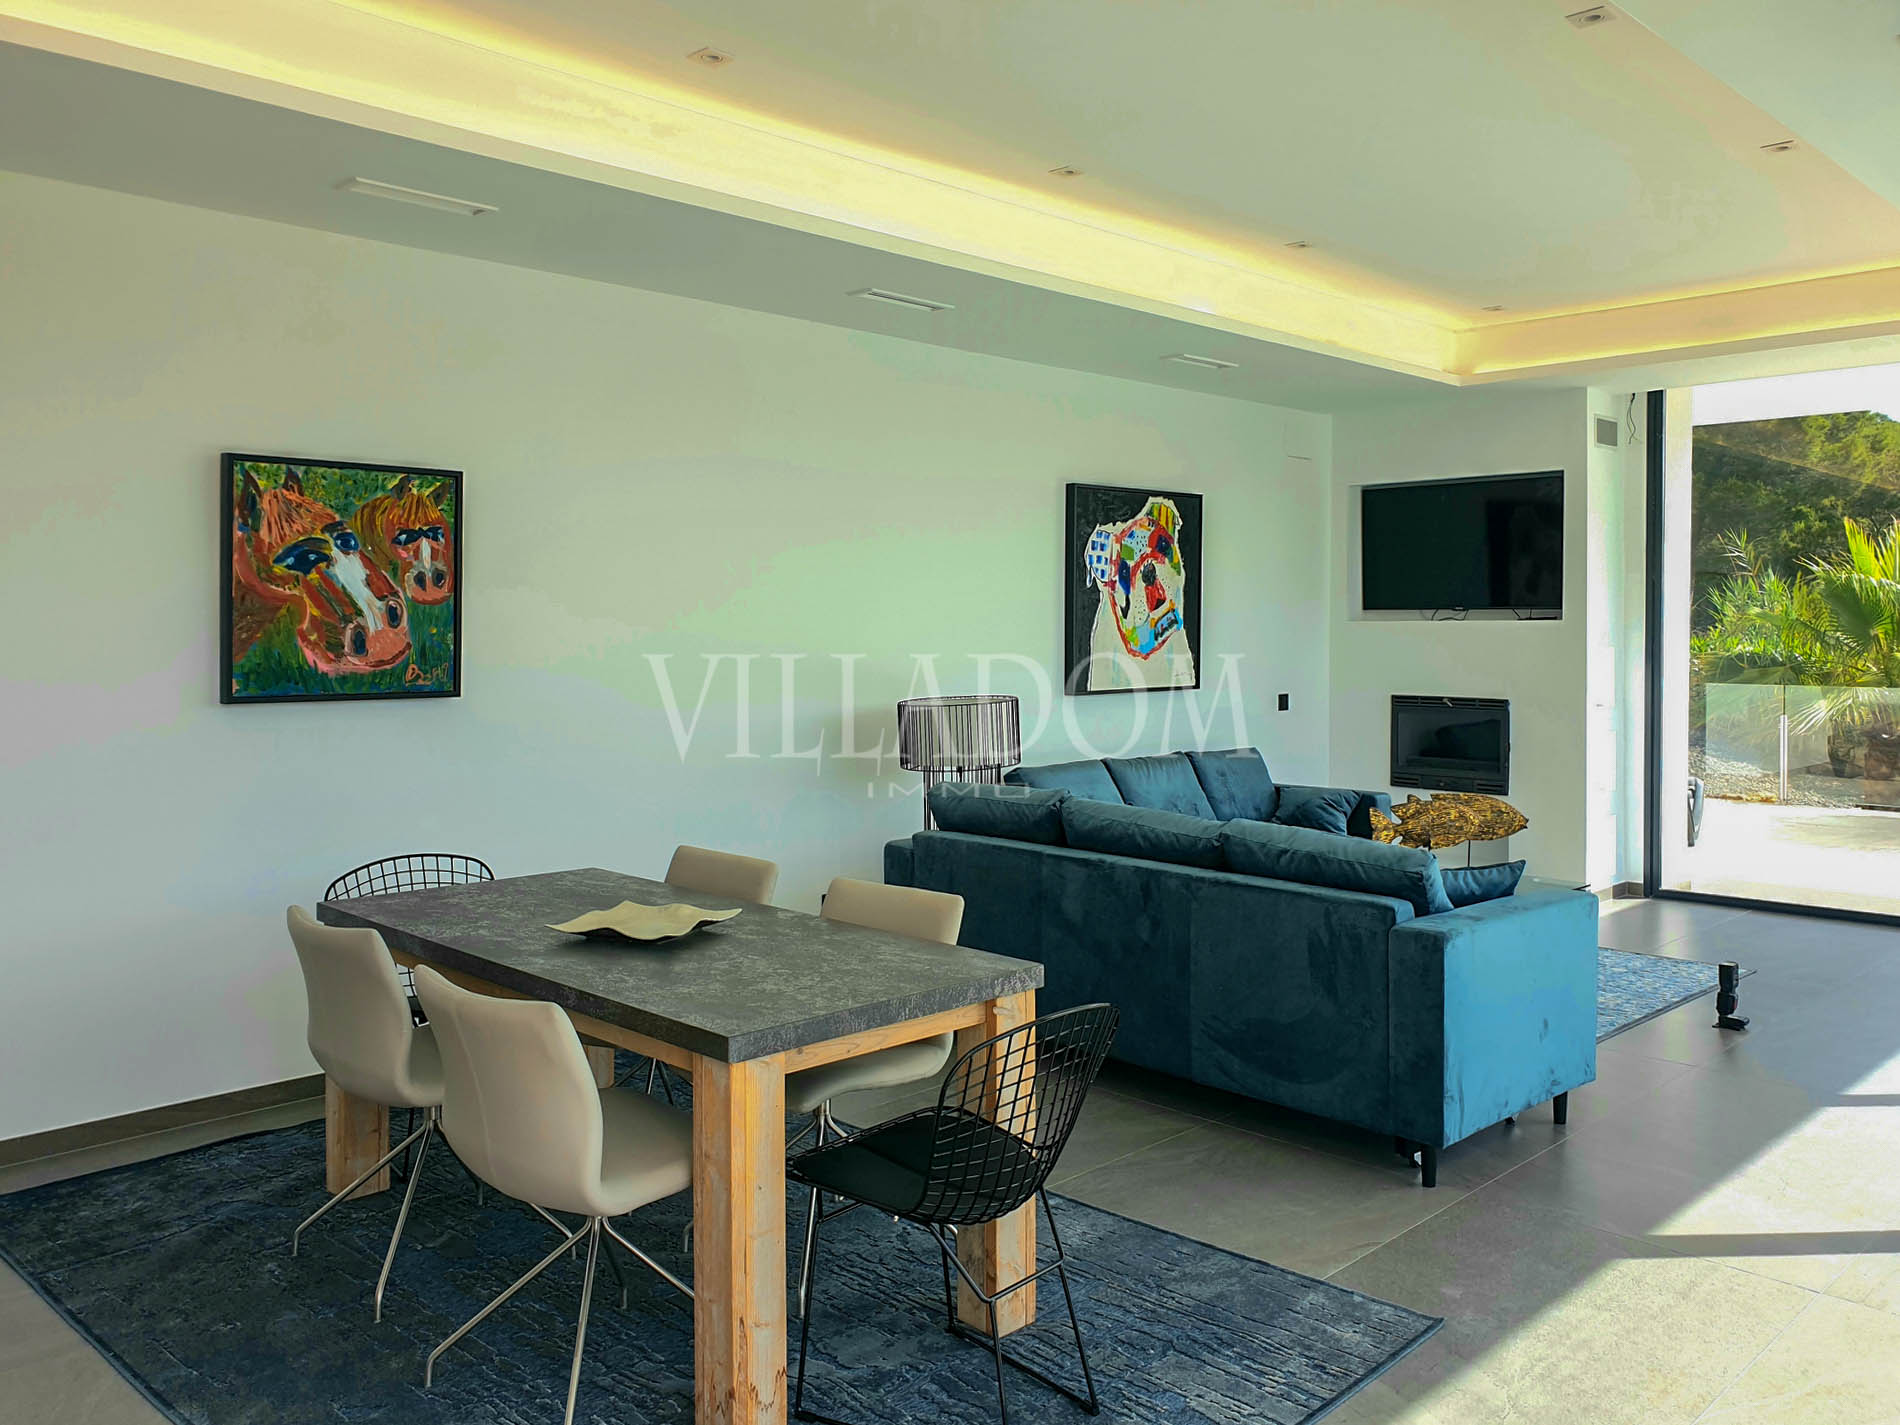 New build villa for sale in Javea